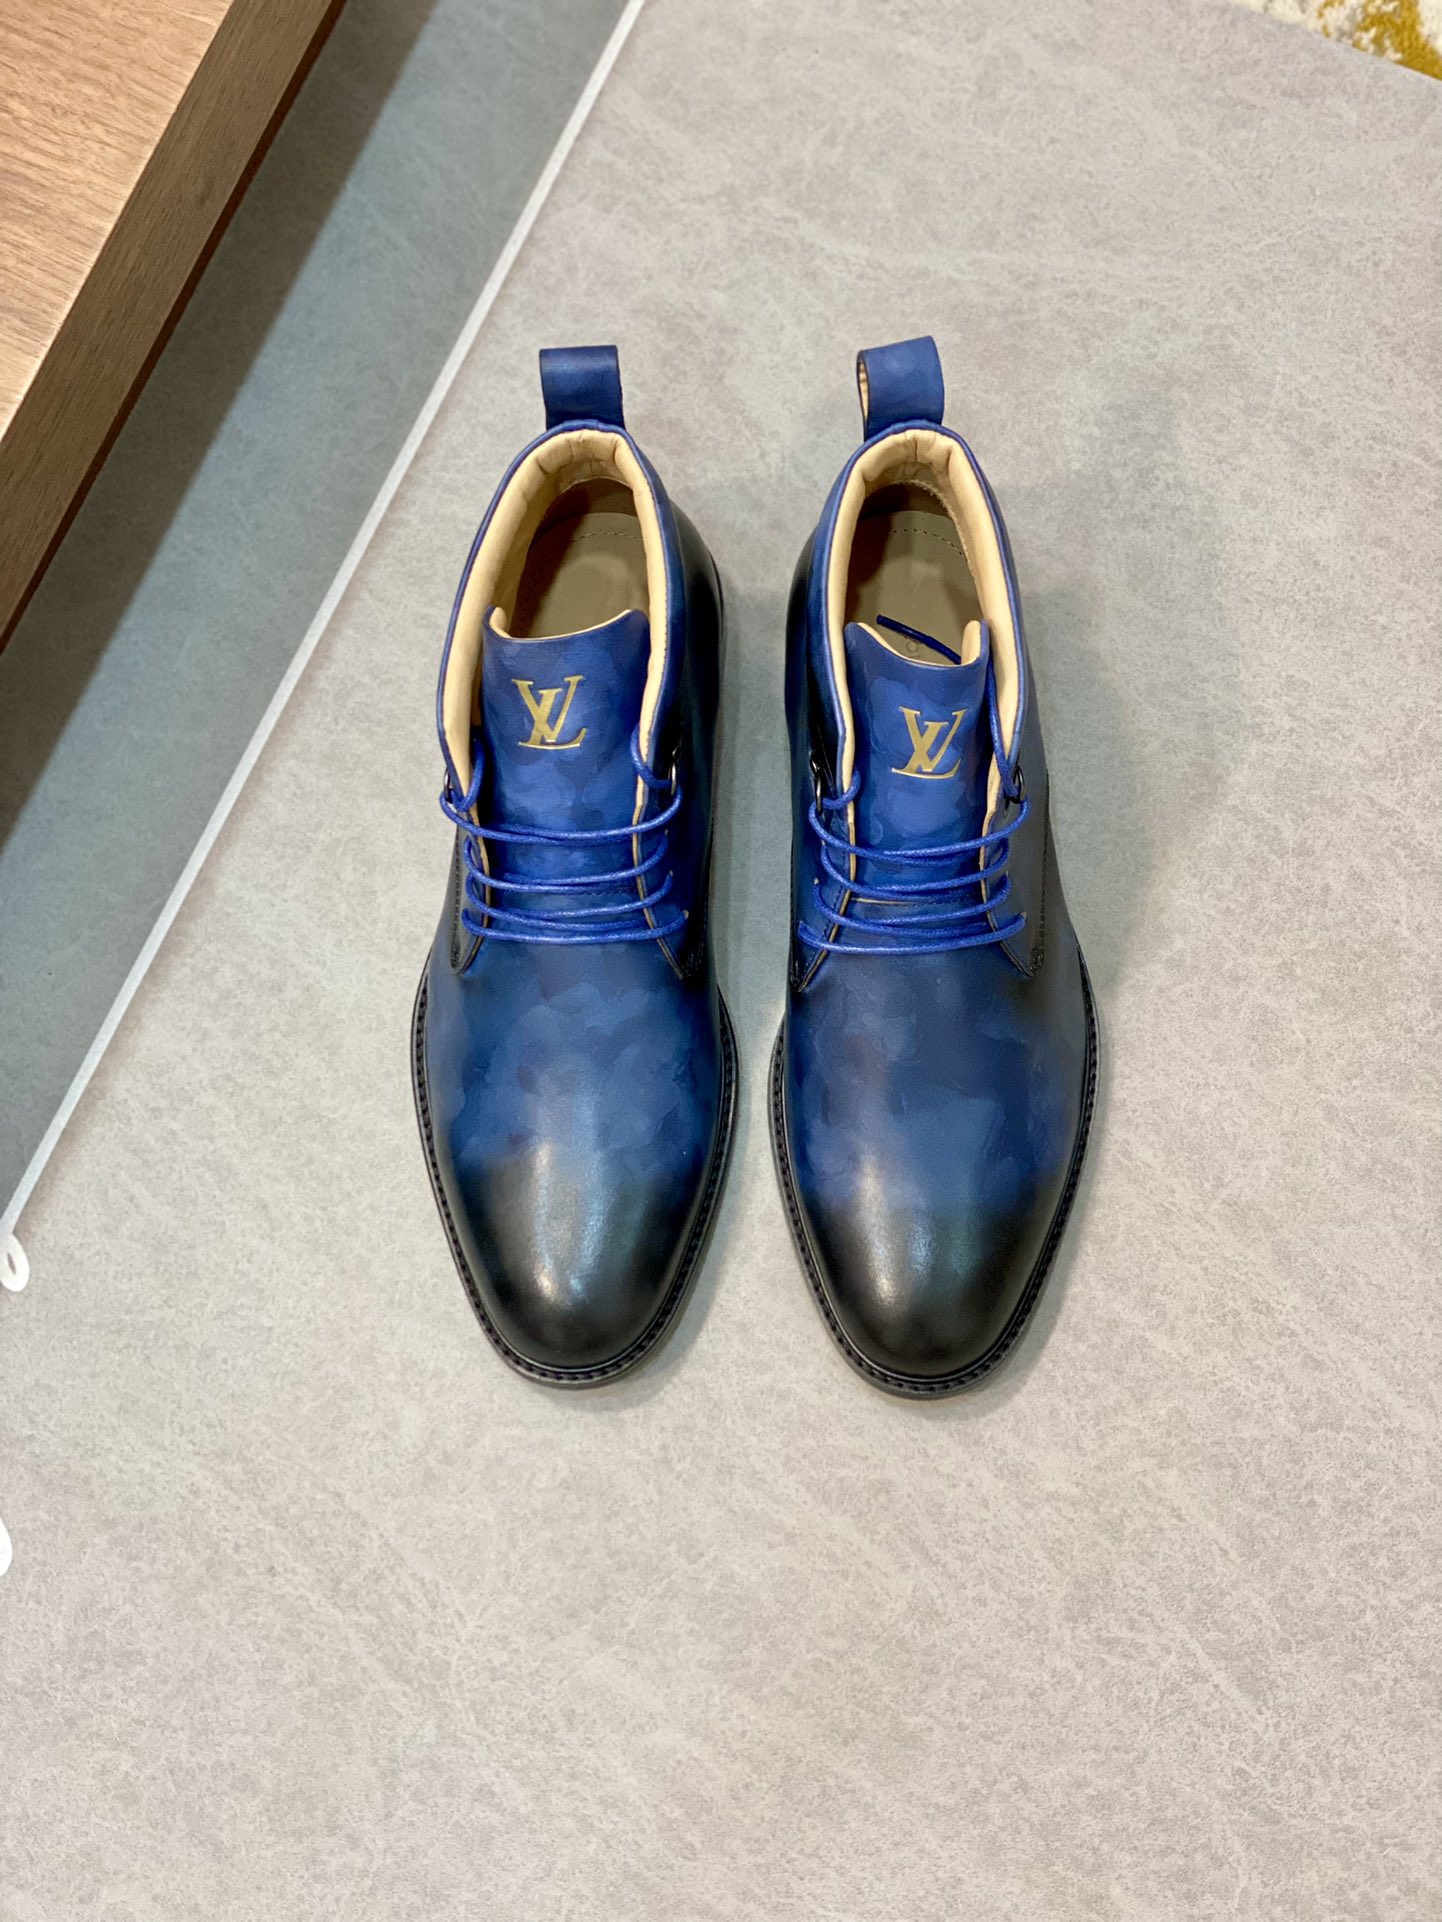 Louis Vuitton Casual Shoes Cowhide Fetal Vintage Mid Tops